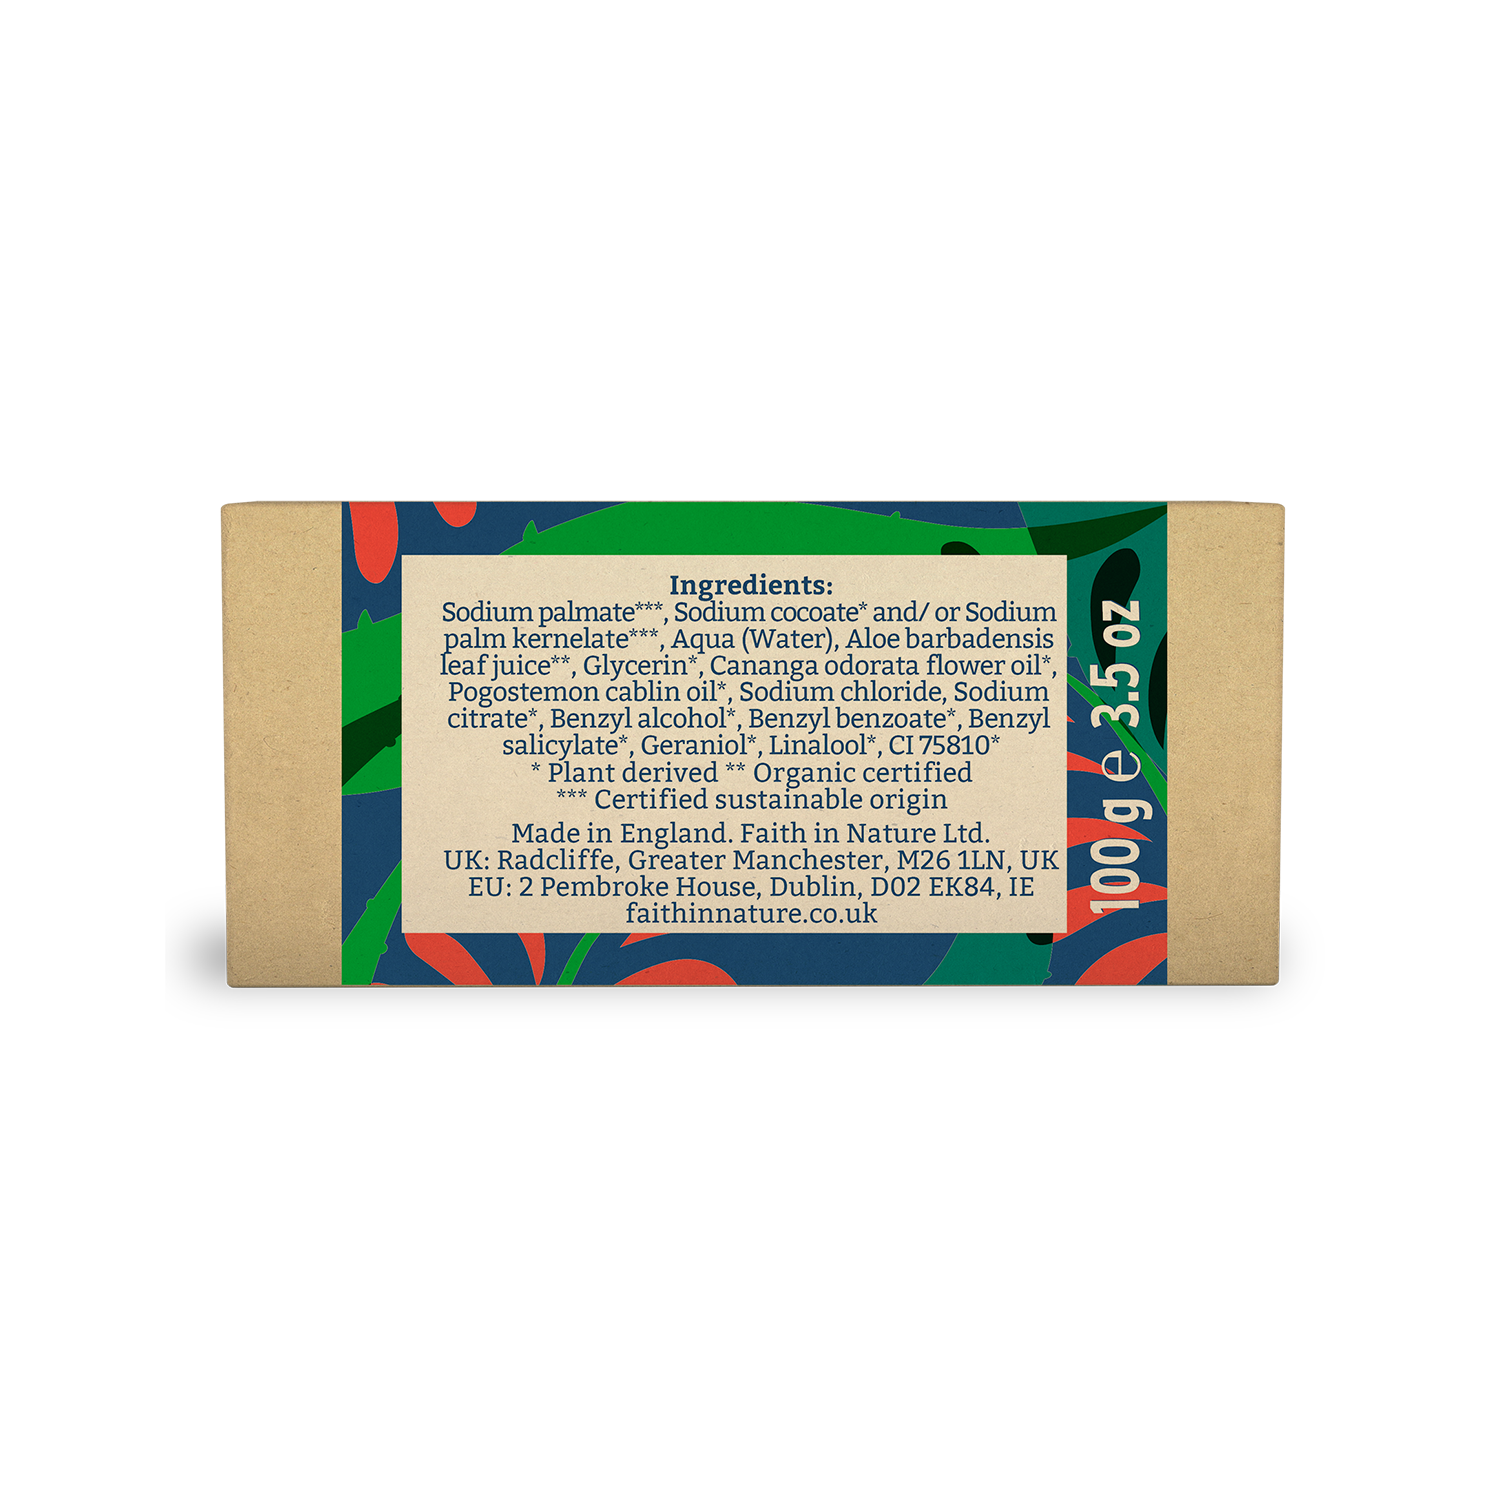 Faith in Nature Boxed Soap 100g - Aloe Vera & Ylang Ylang